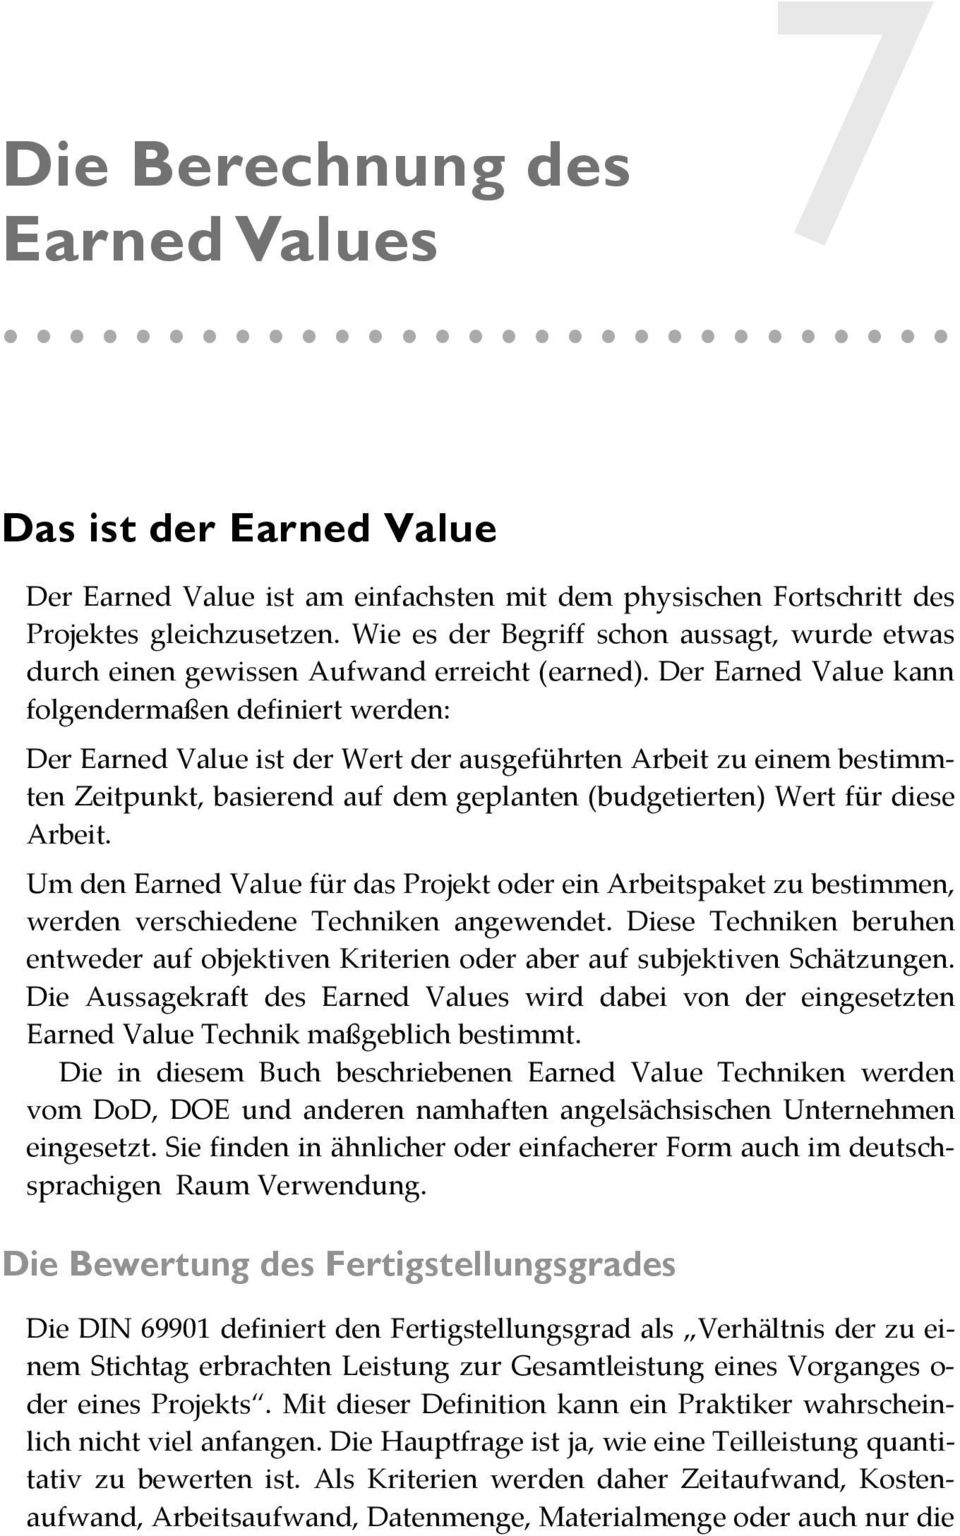 Der Earned Value kann folgendermaßen definiert werden: Der Earned Value ist der Wert der ausgeführten Arbeit zu einem bestimmten Zeitpunkt, basierend auf dem geplanten (budgetierten) Wert für diese